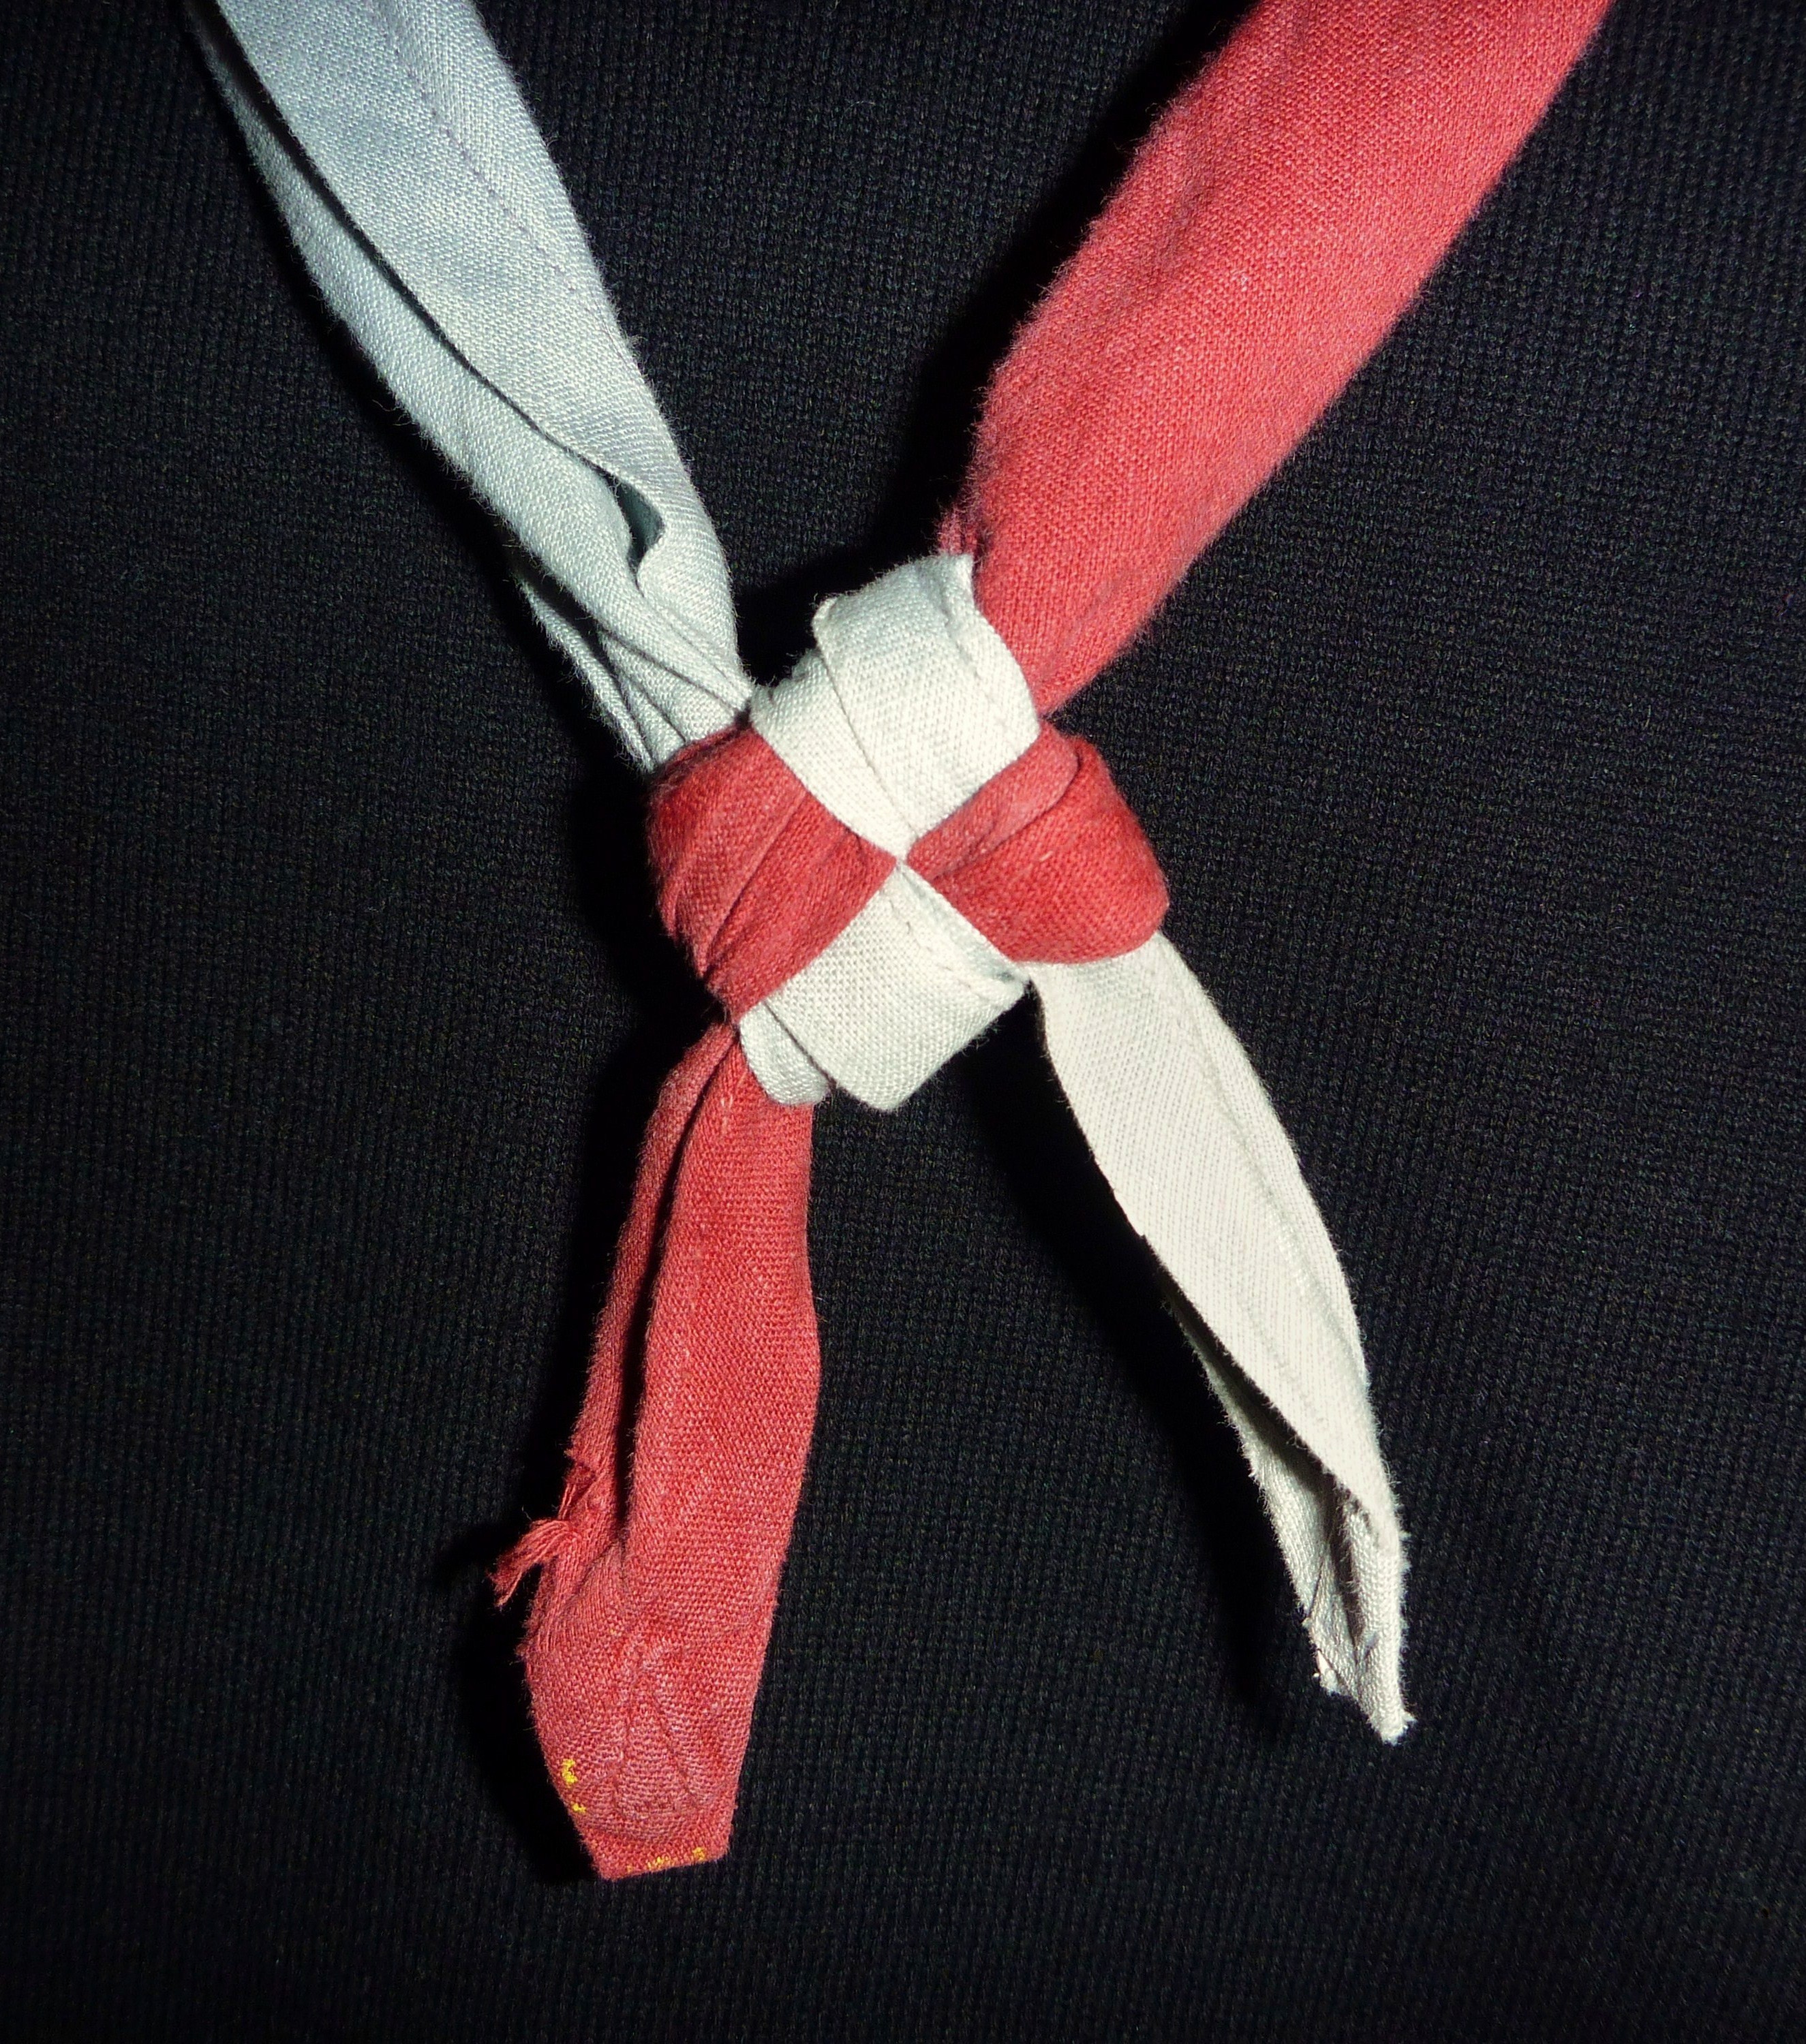 Le nœufd carré sur les foulards des scouts francophone, un symbole fort